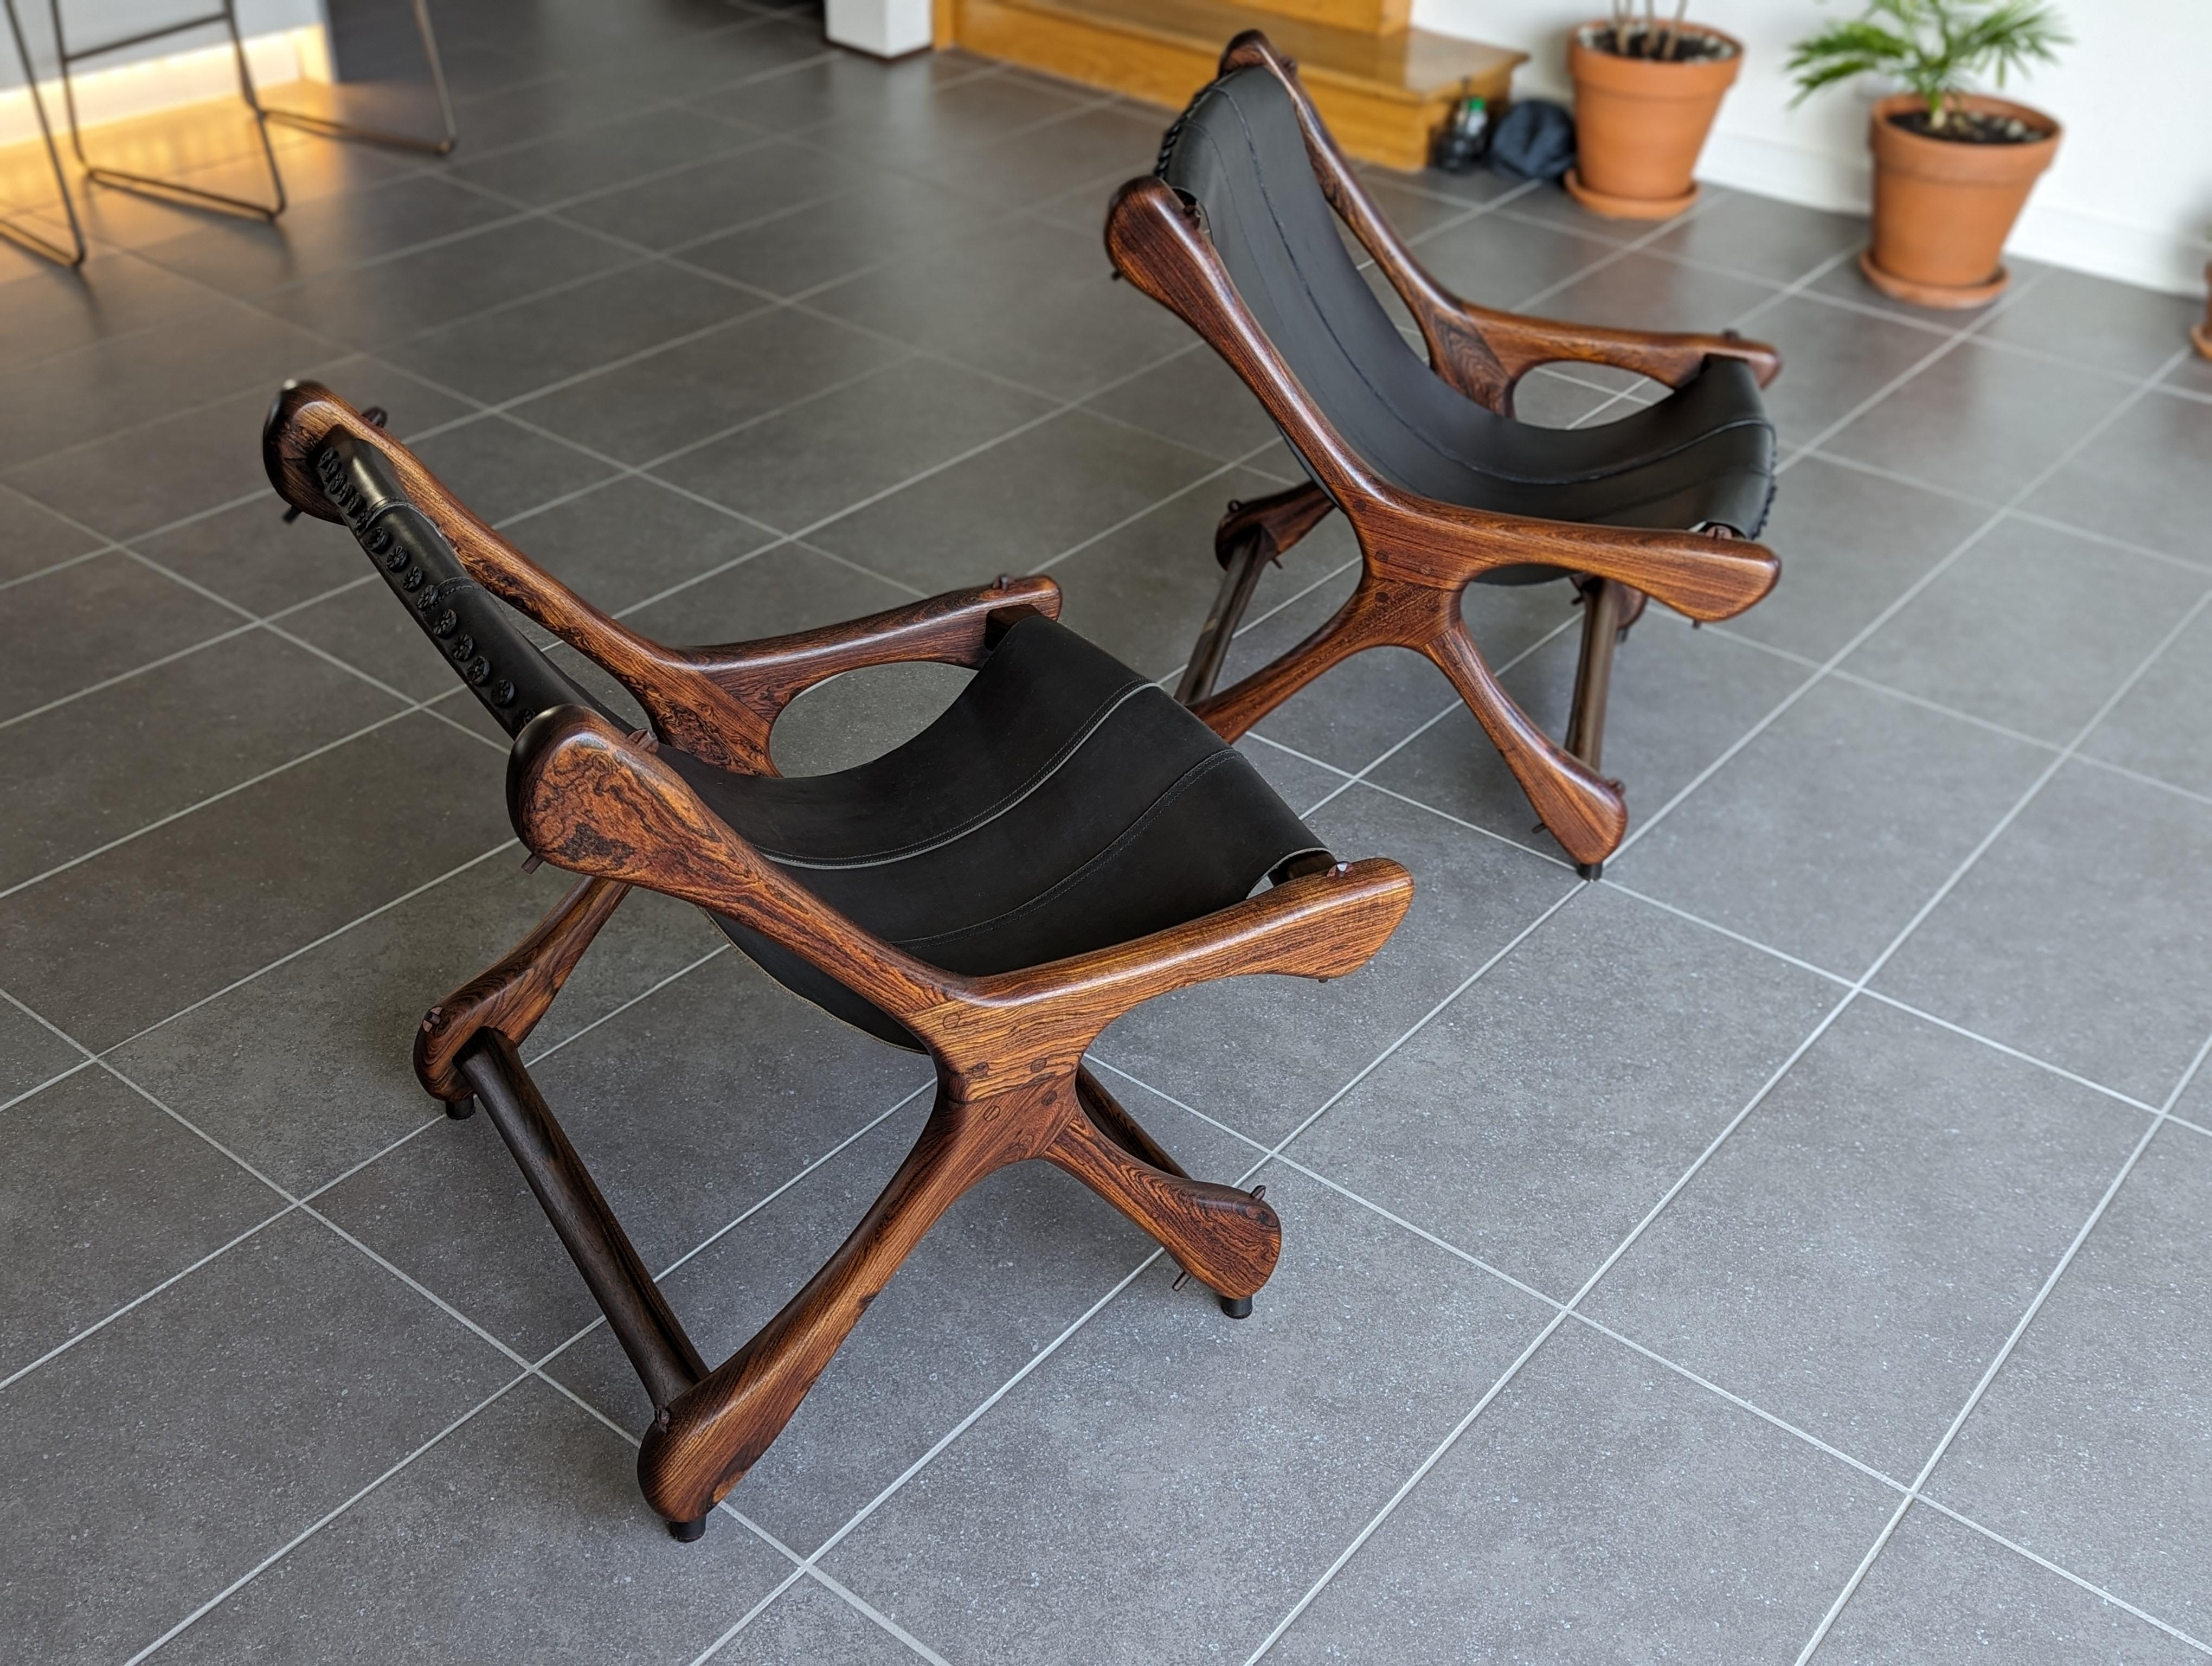 Pour votre considération, une paire de chaises de salon Don Shoemaker Sloucher des années 1960, en palissandre cocobolo massif et cuir noir. Exemple emblématique du design organique mexicain du milieu du siècle. 

Des formes et une structure